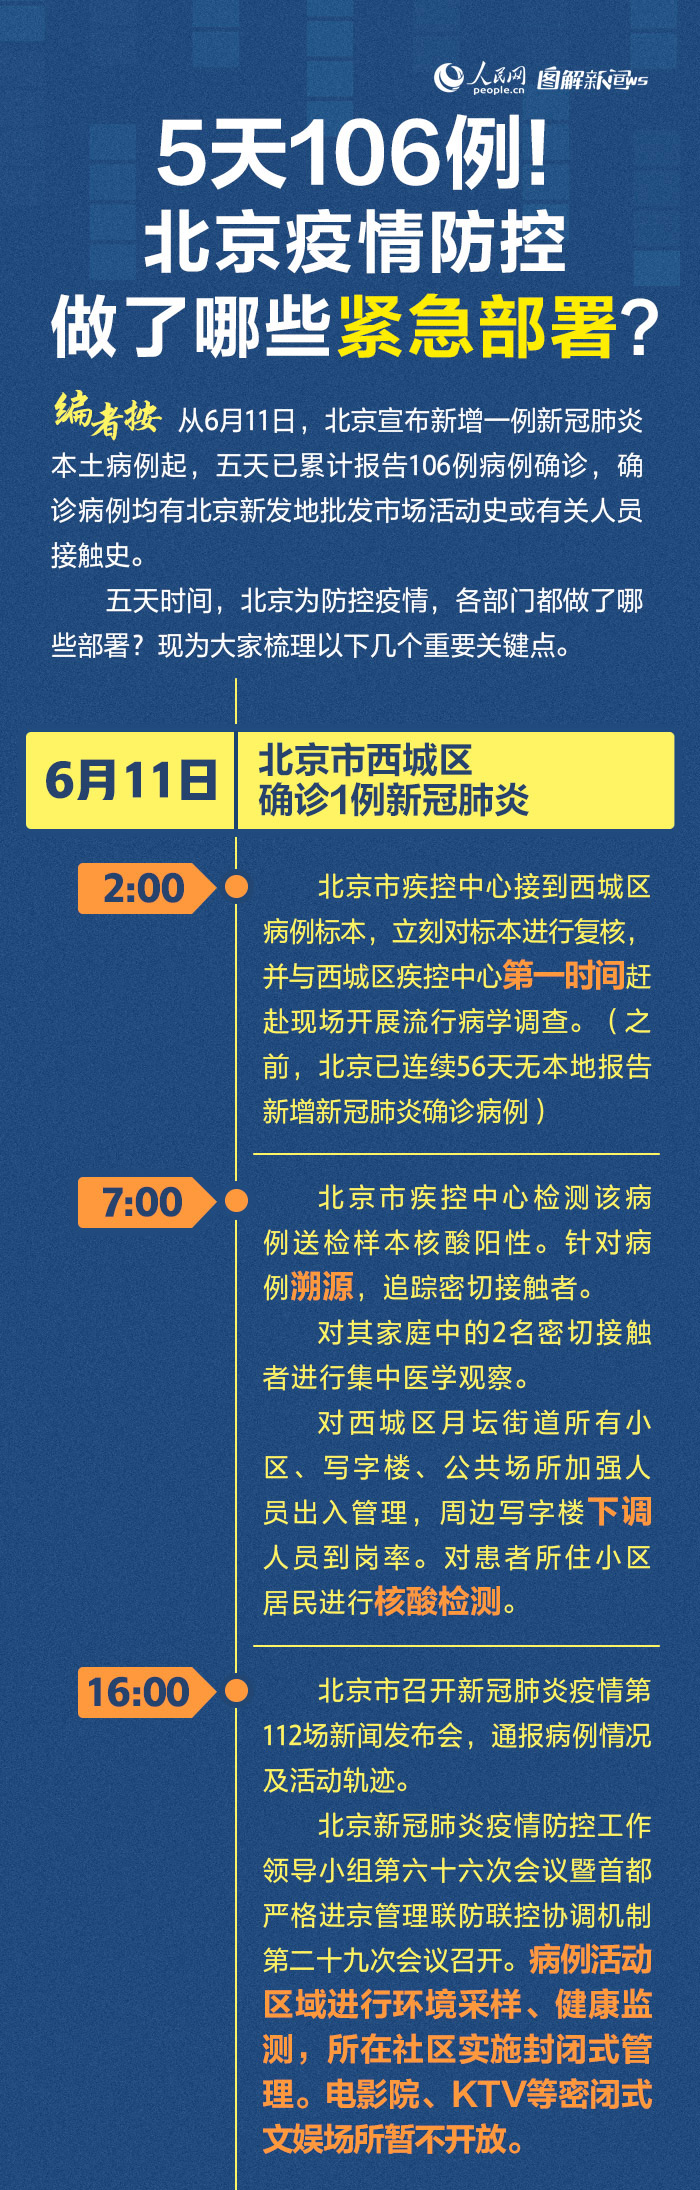 5天106例北京疫情防控做了哪些紧急部署